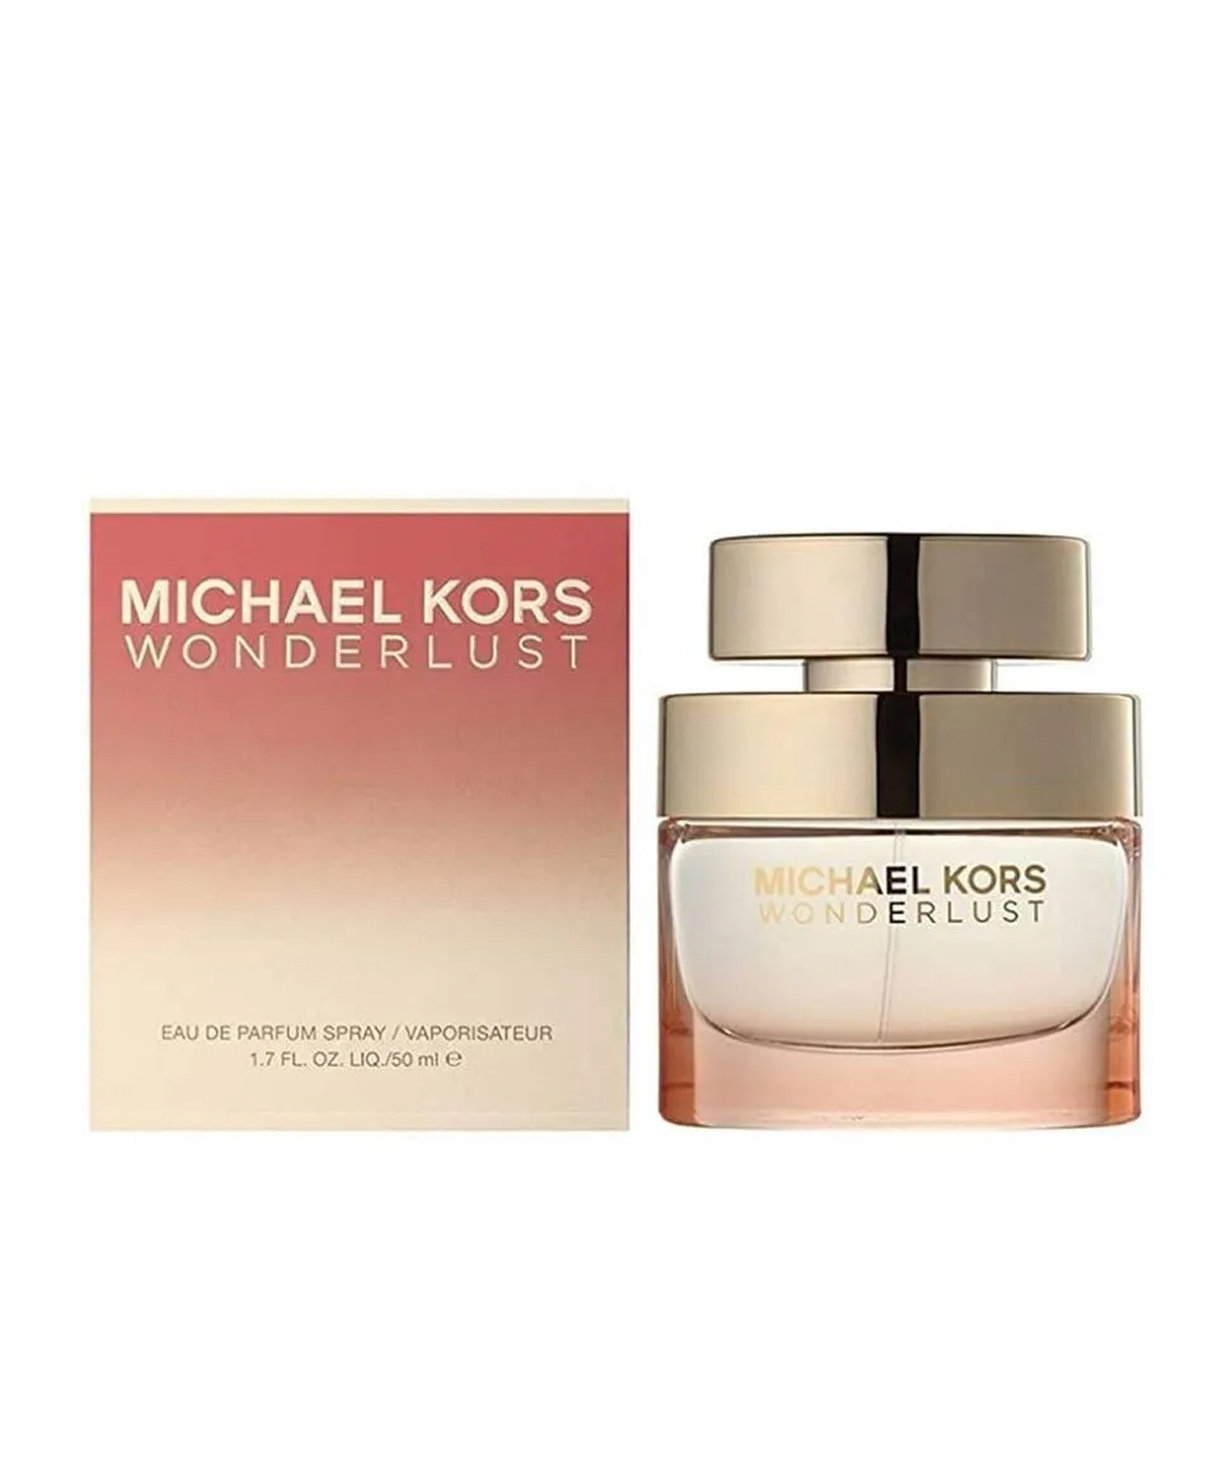 Perfume «Michael Kors» Wonderlust, for women, 50 ml